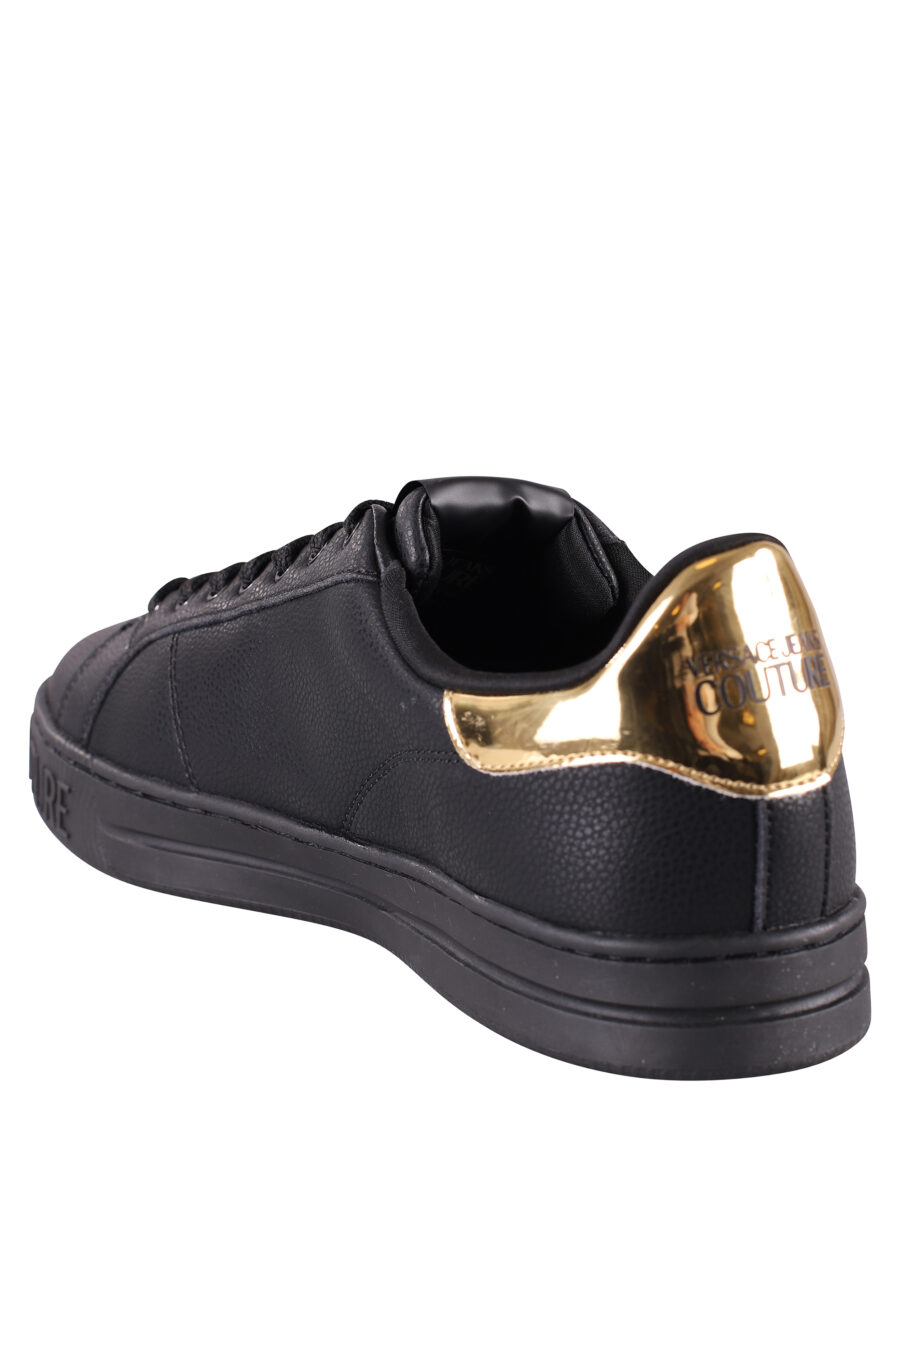 Zapatillas negras y doradas con logo semicirculo - IMG 8484